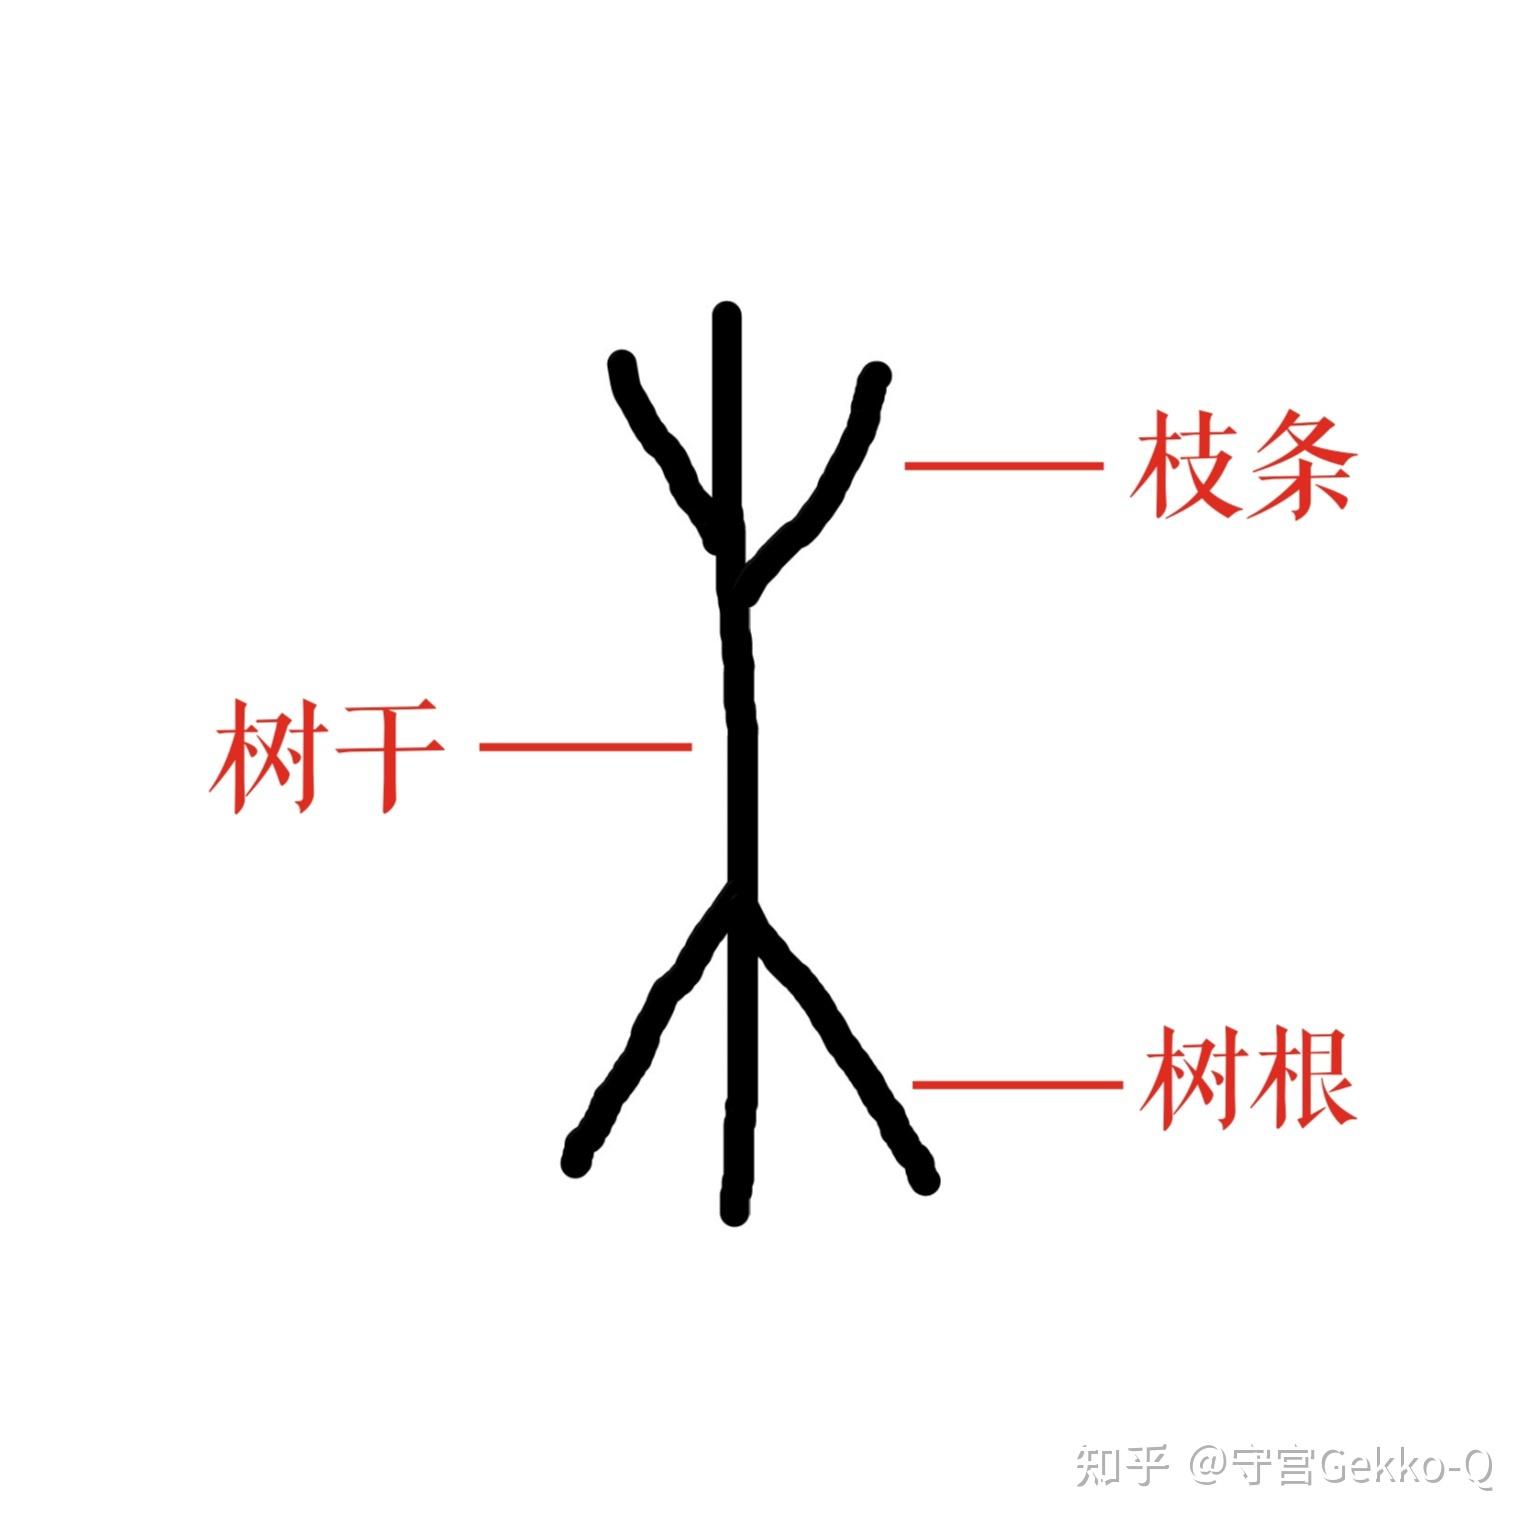 木,从甲骨文来看,算是一个典型的象形字:中间一竖代表树干,上面的分叉